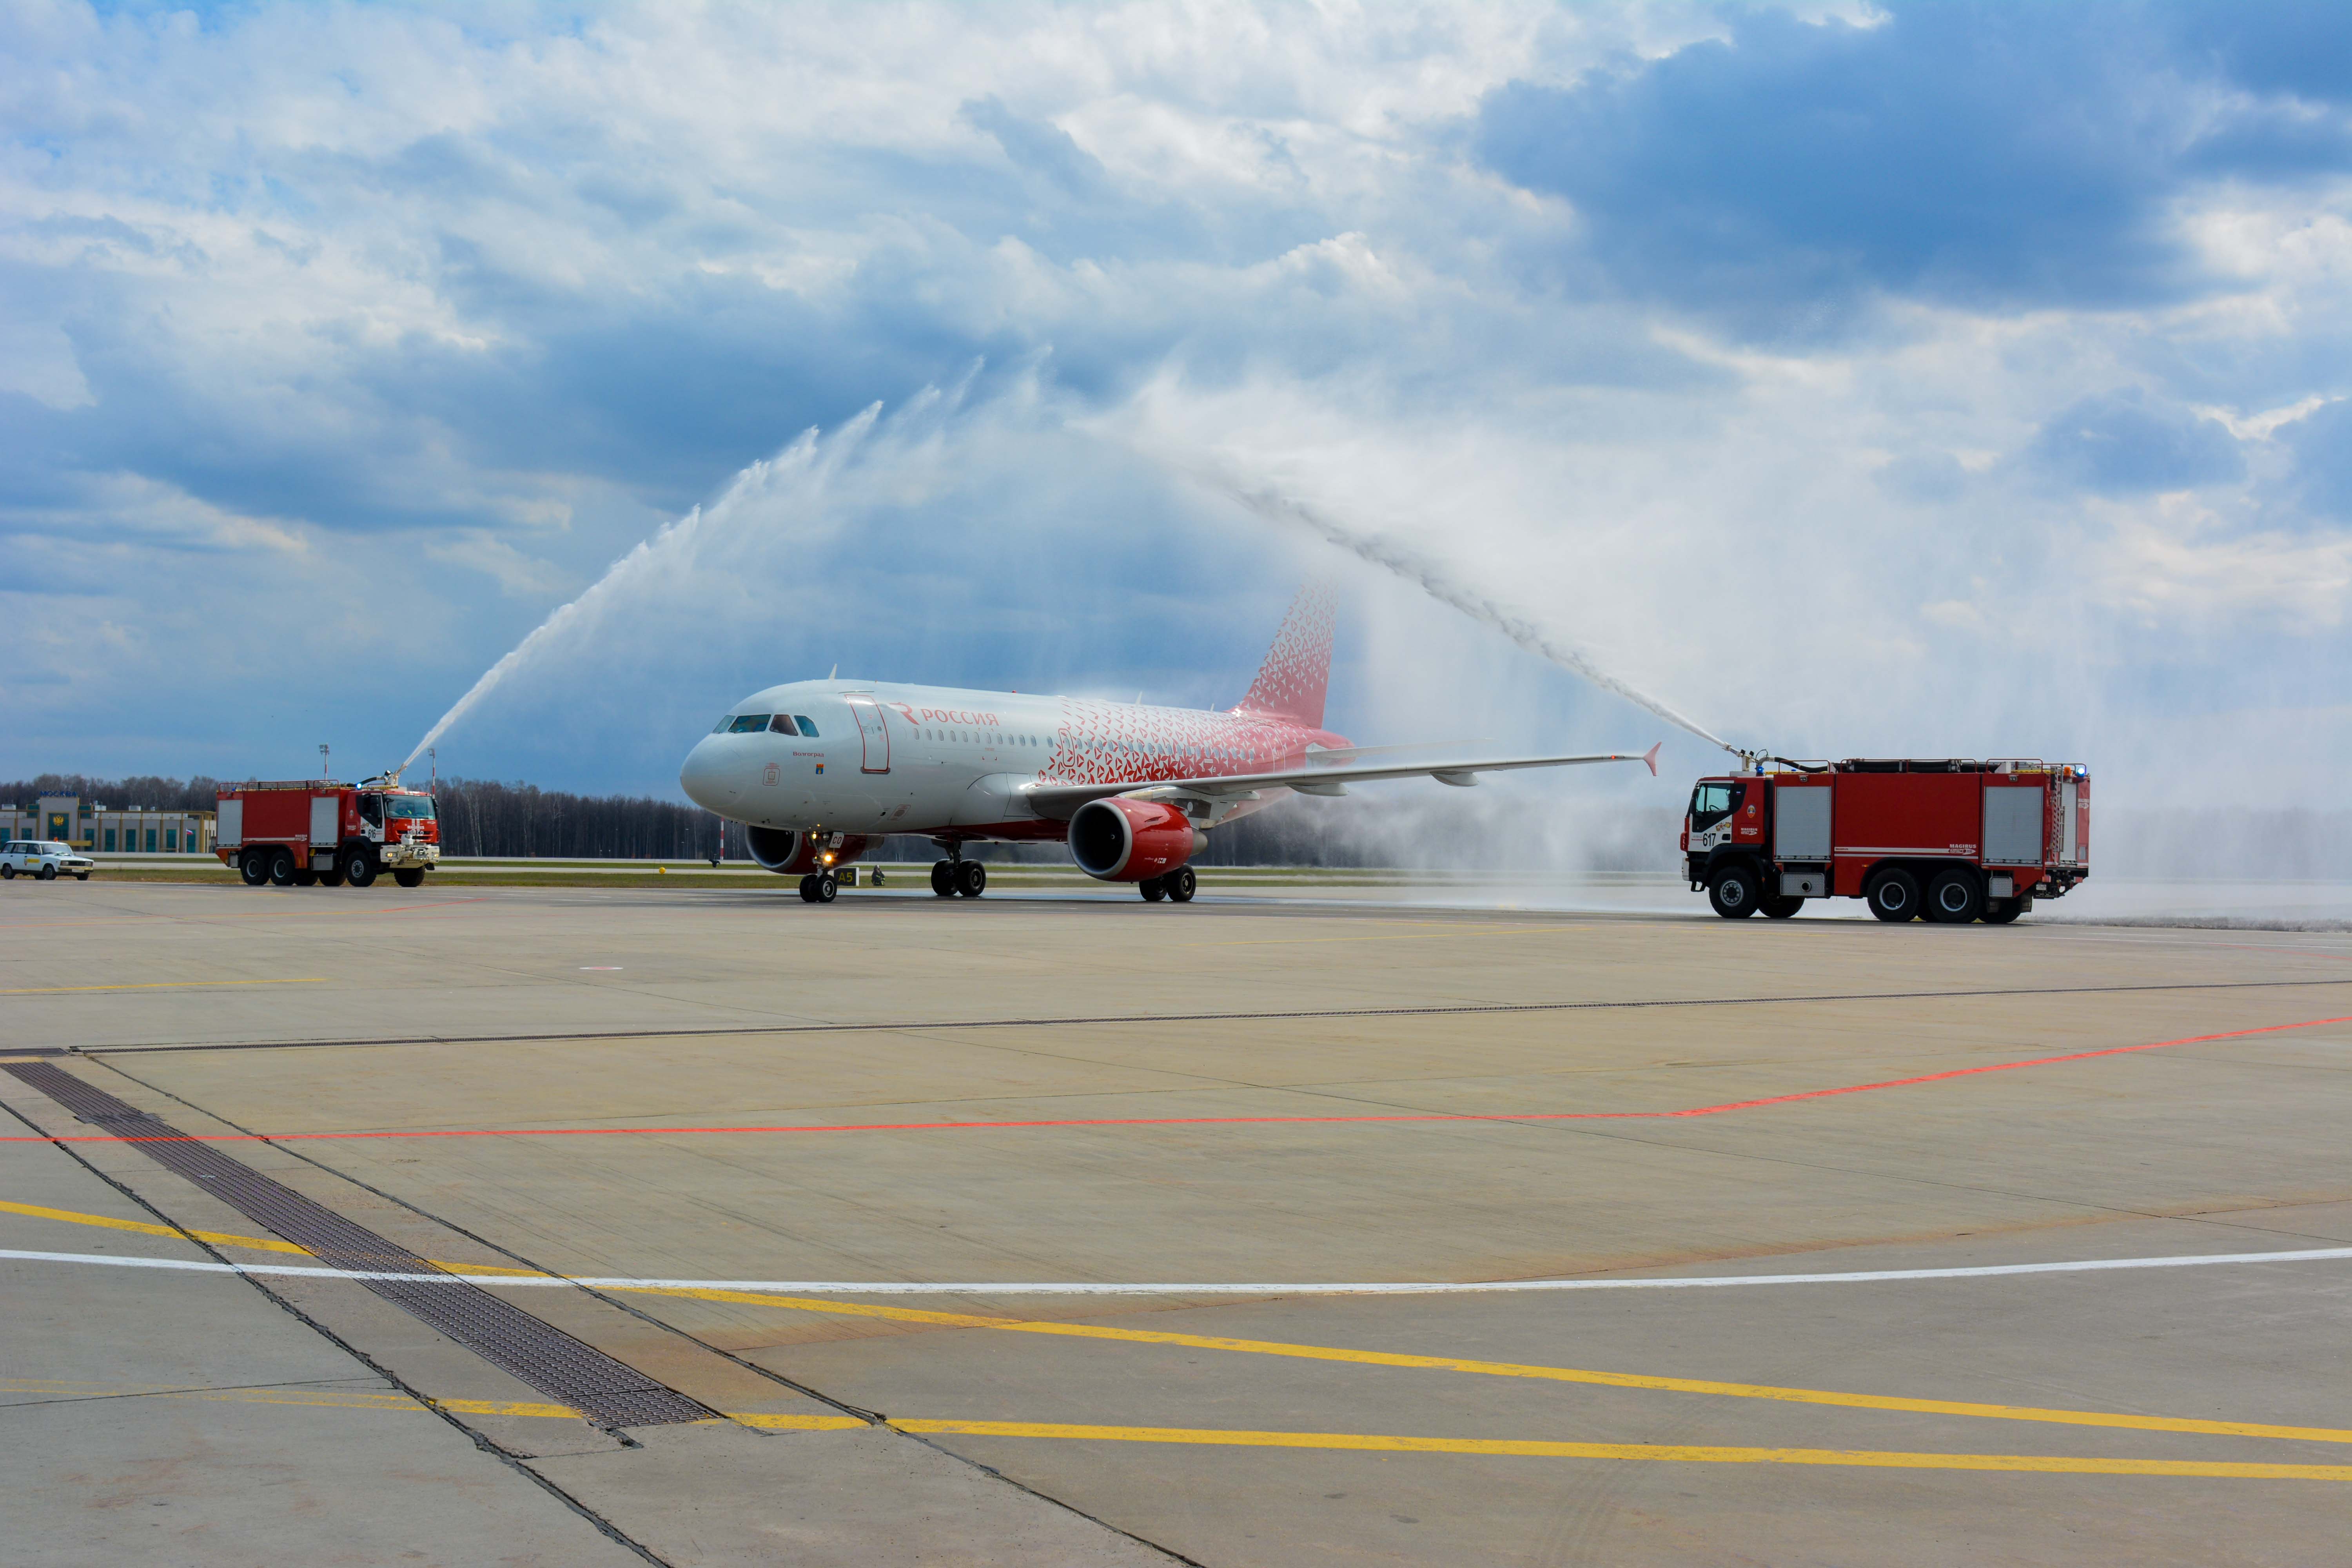 Внуково торжественно встретил первый Airbus A319 в ливрее объединенной авиакомпании «Россия» | Международный аэропорт Внуково